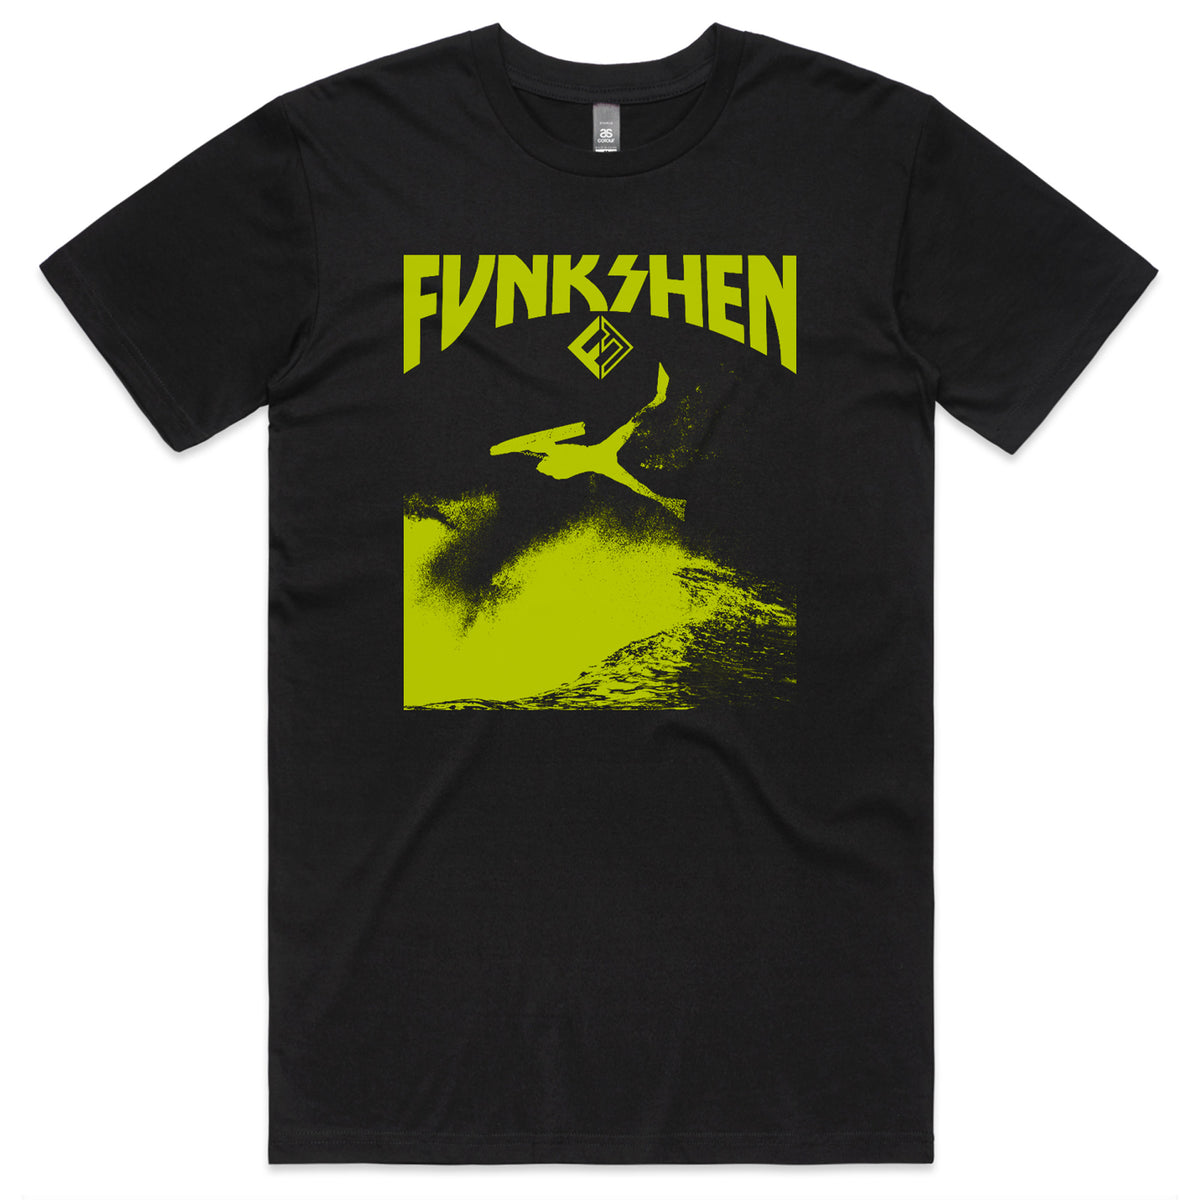 Funkshen INVERT T-Shirt - Black